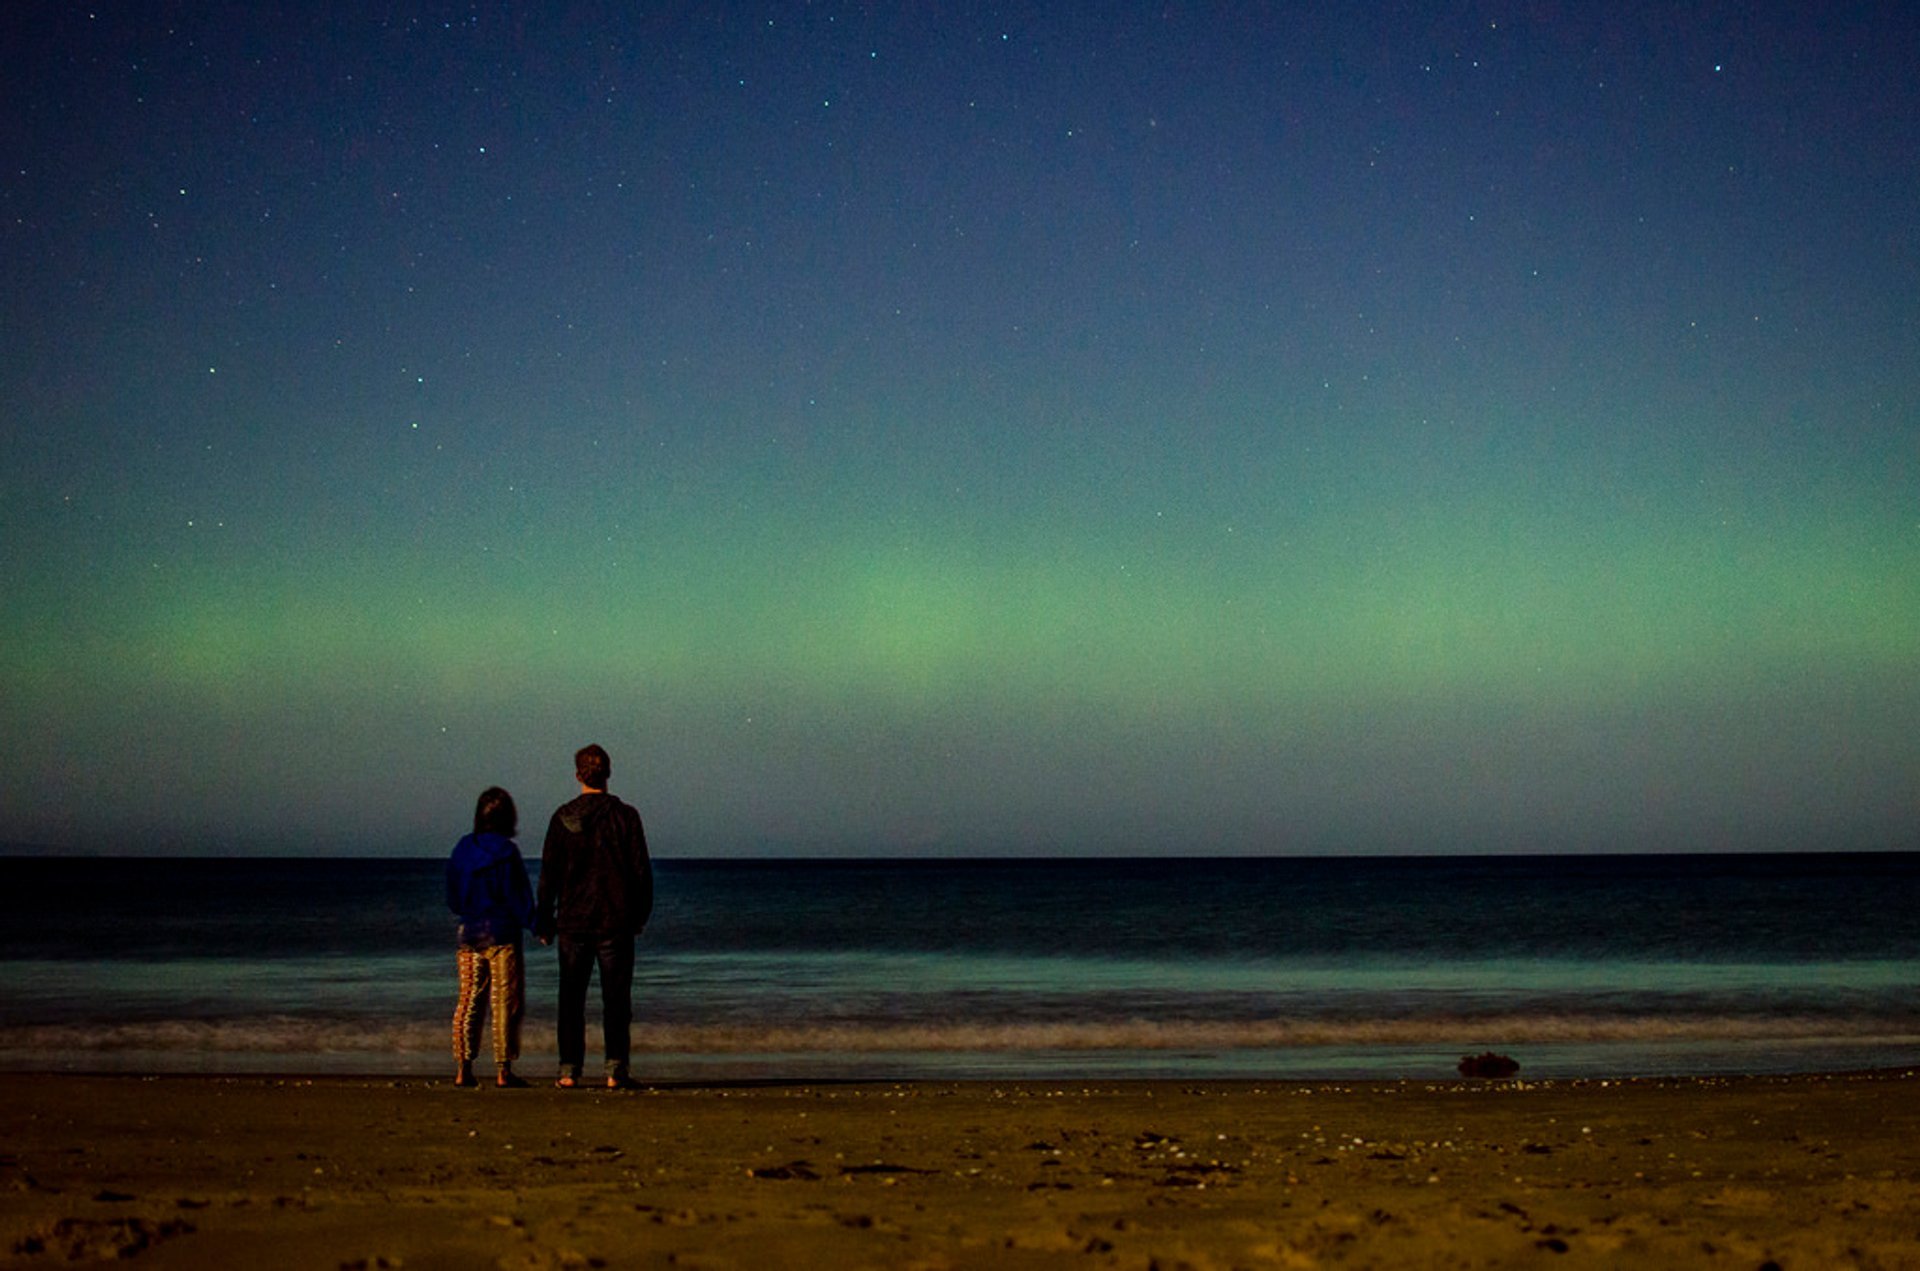 Aurora australe o luci del sud